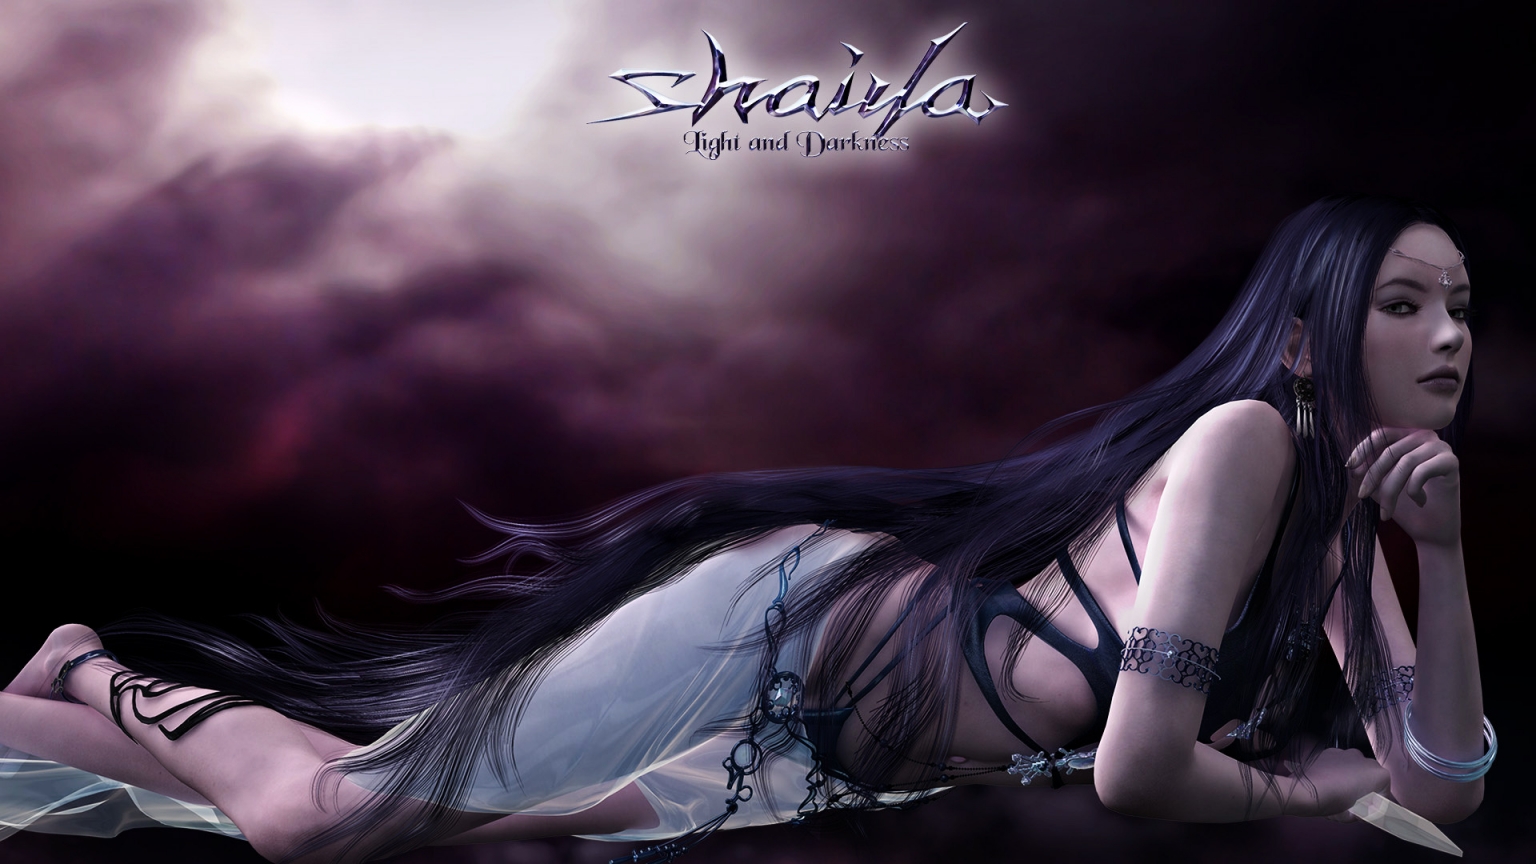 Shaiya Long Purple Hair for 1536 x 864 HDTV resolution